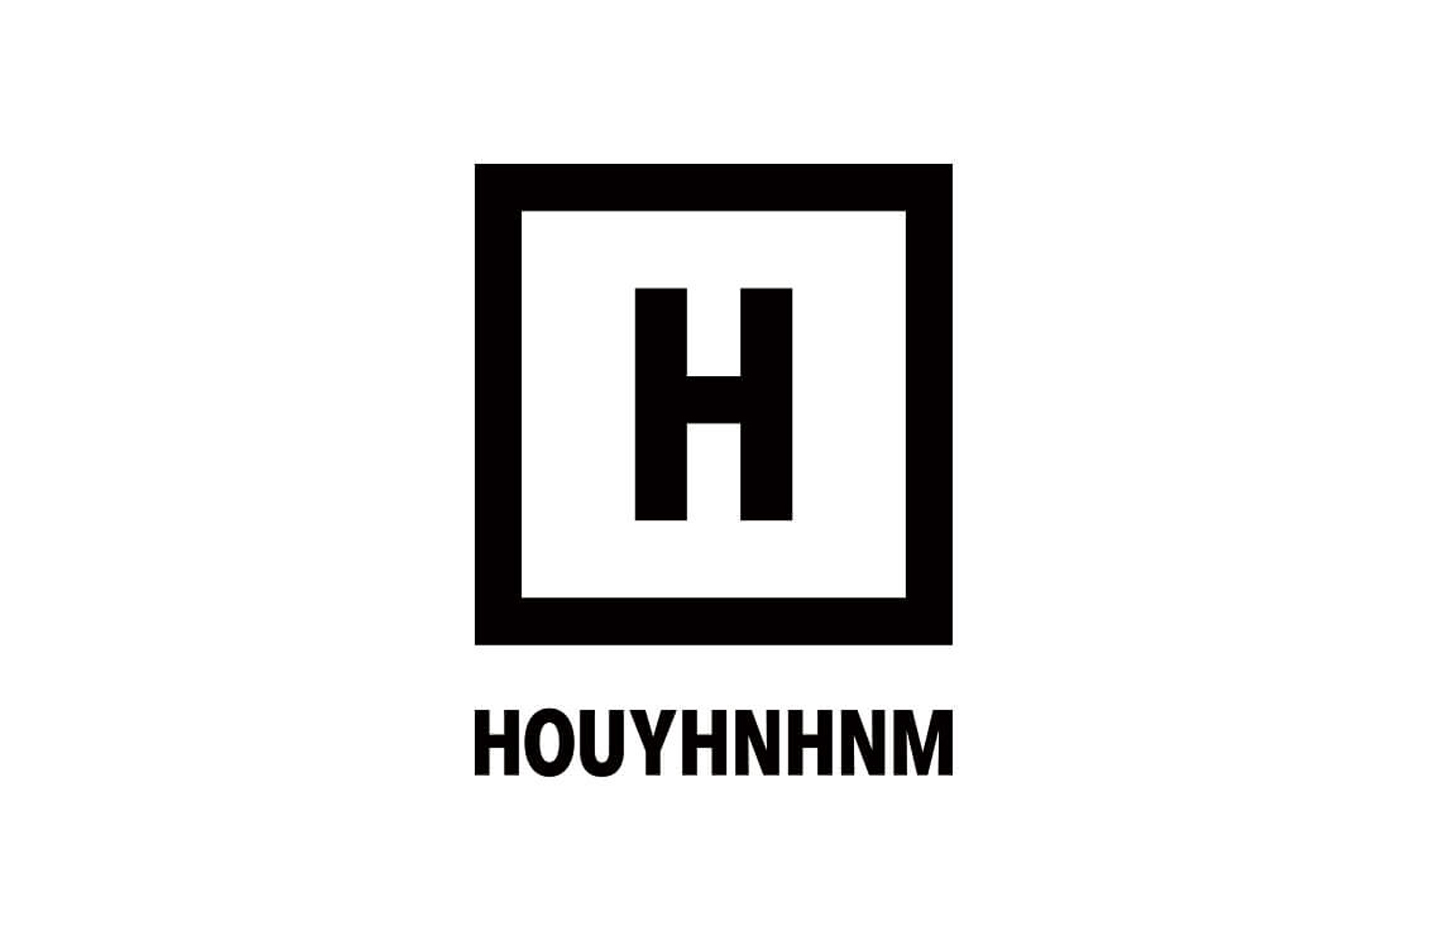 HOUYHNHNM